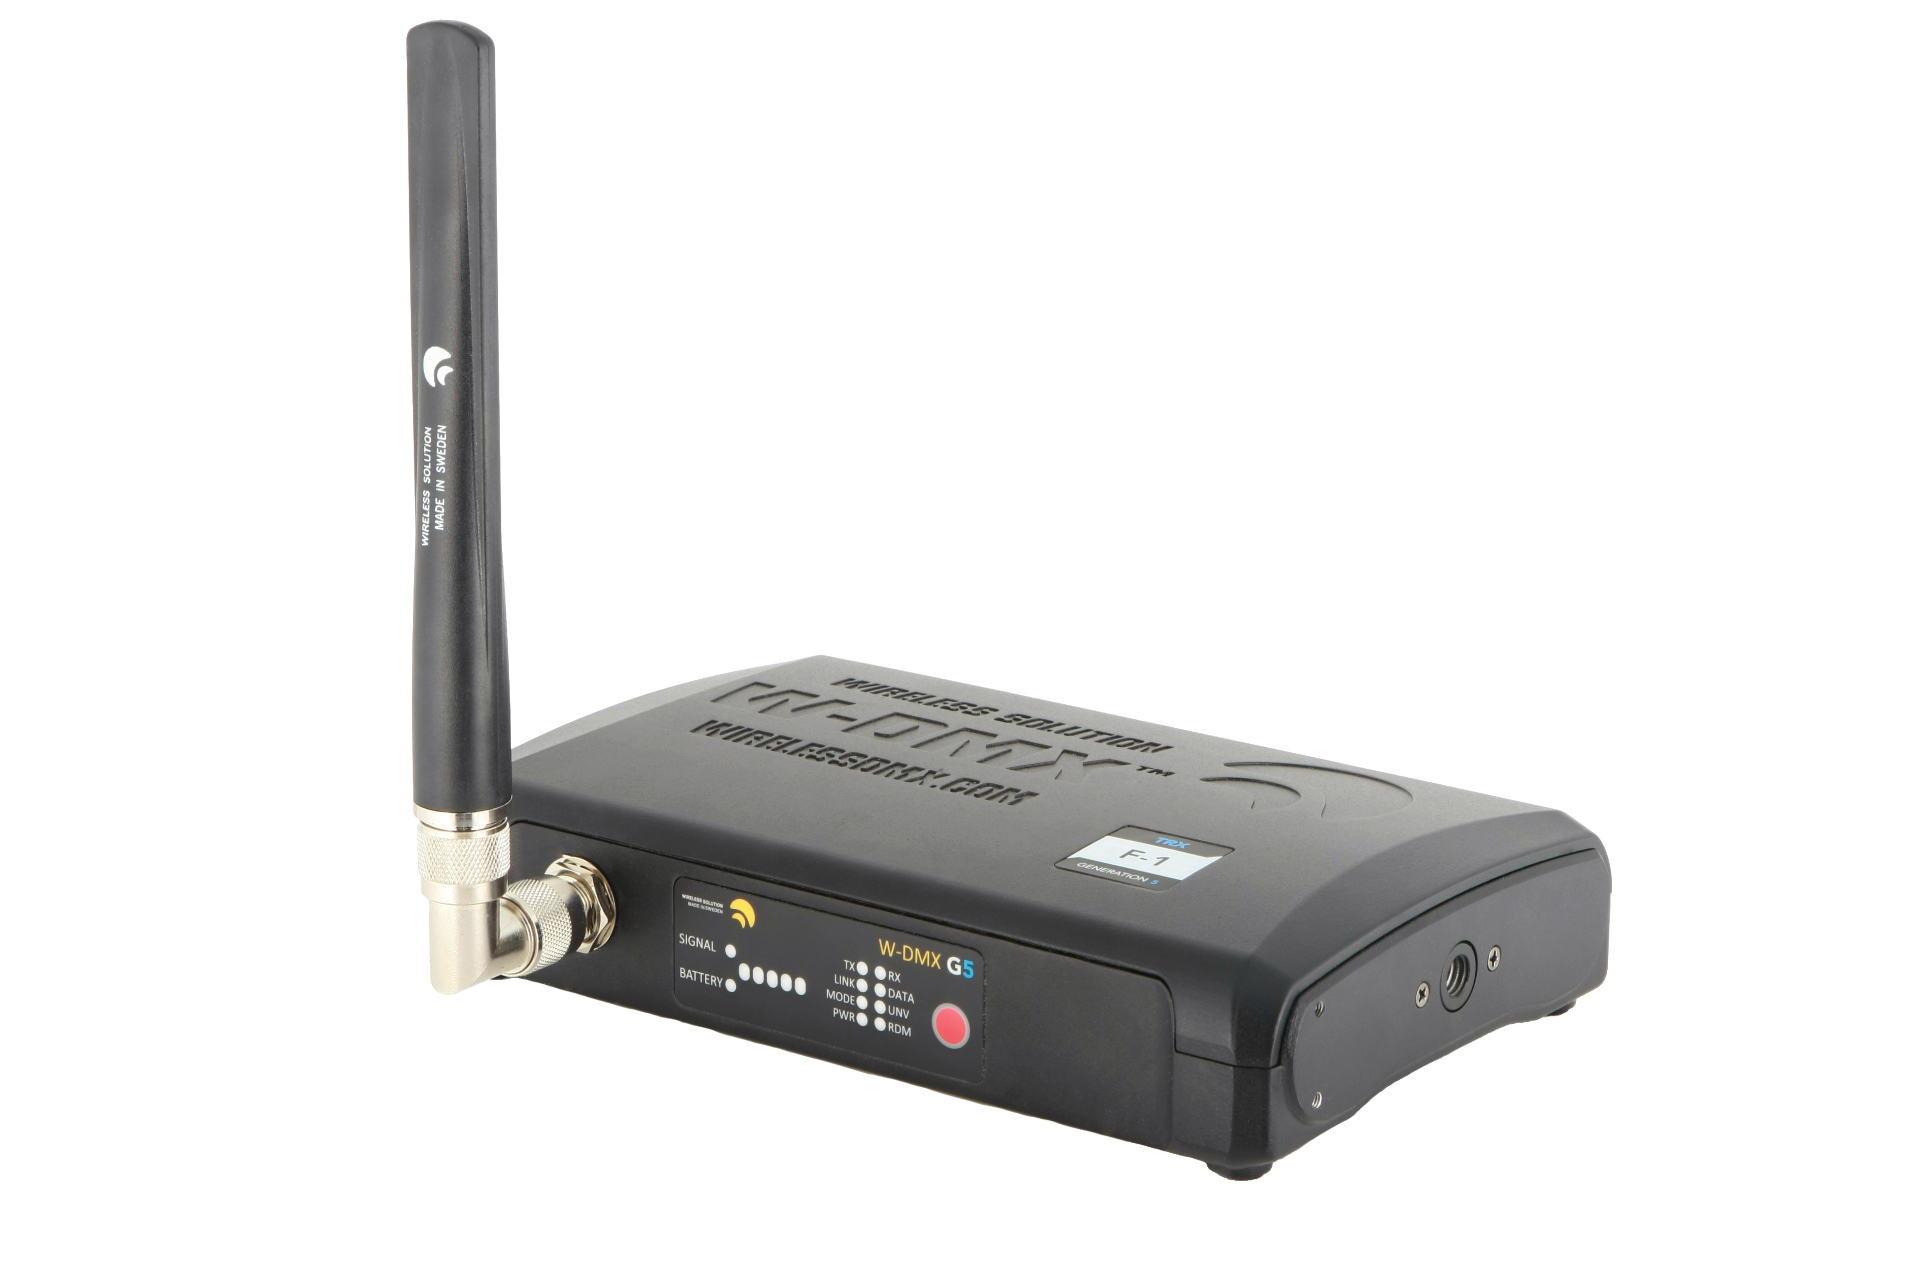 Wireless Solution BlackBox F-1 G5 Передатчик и приёмник 512 каналов DMX с возможностью расширения до 1024 каналов в режиме Double-Up